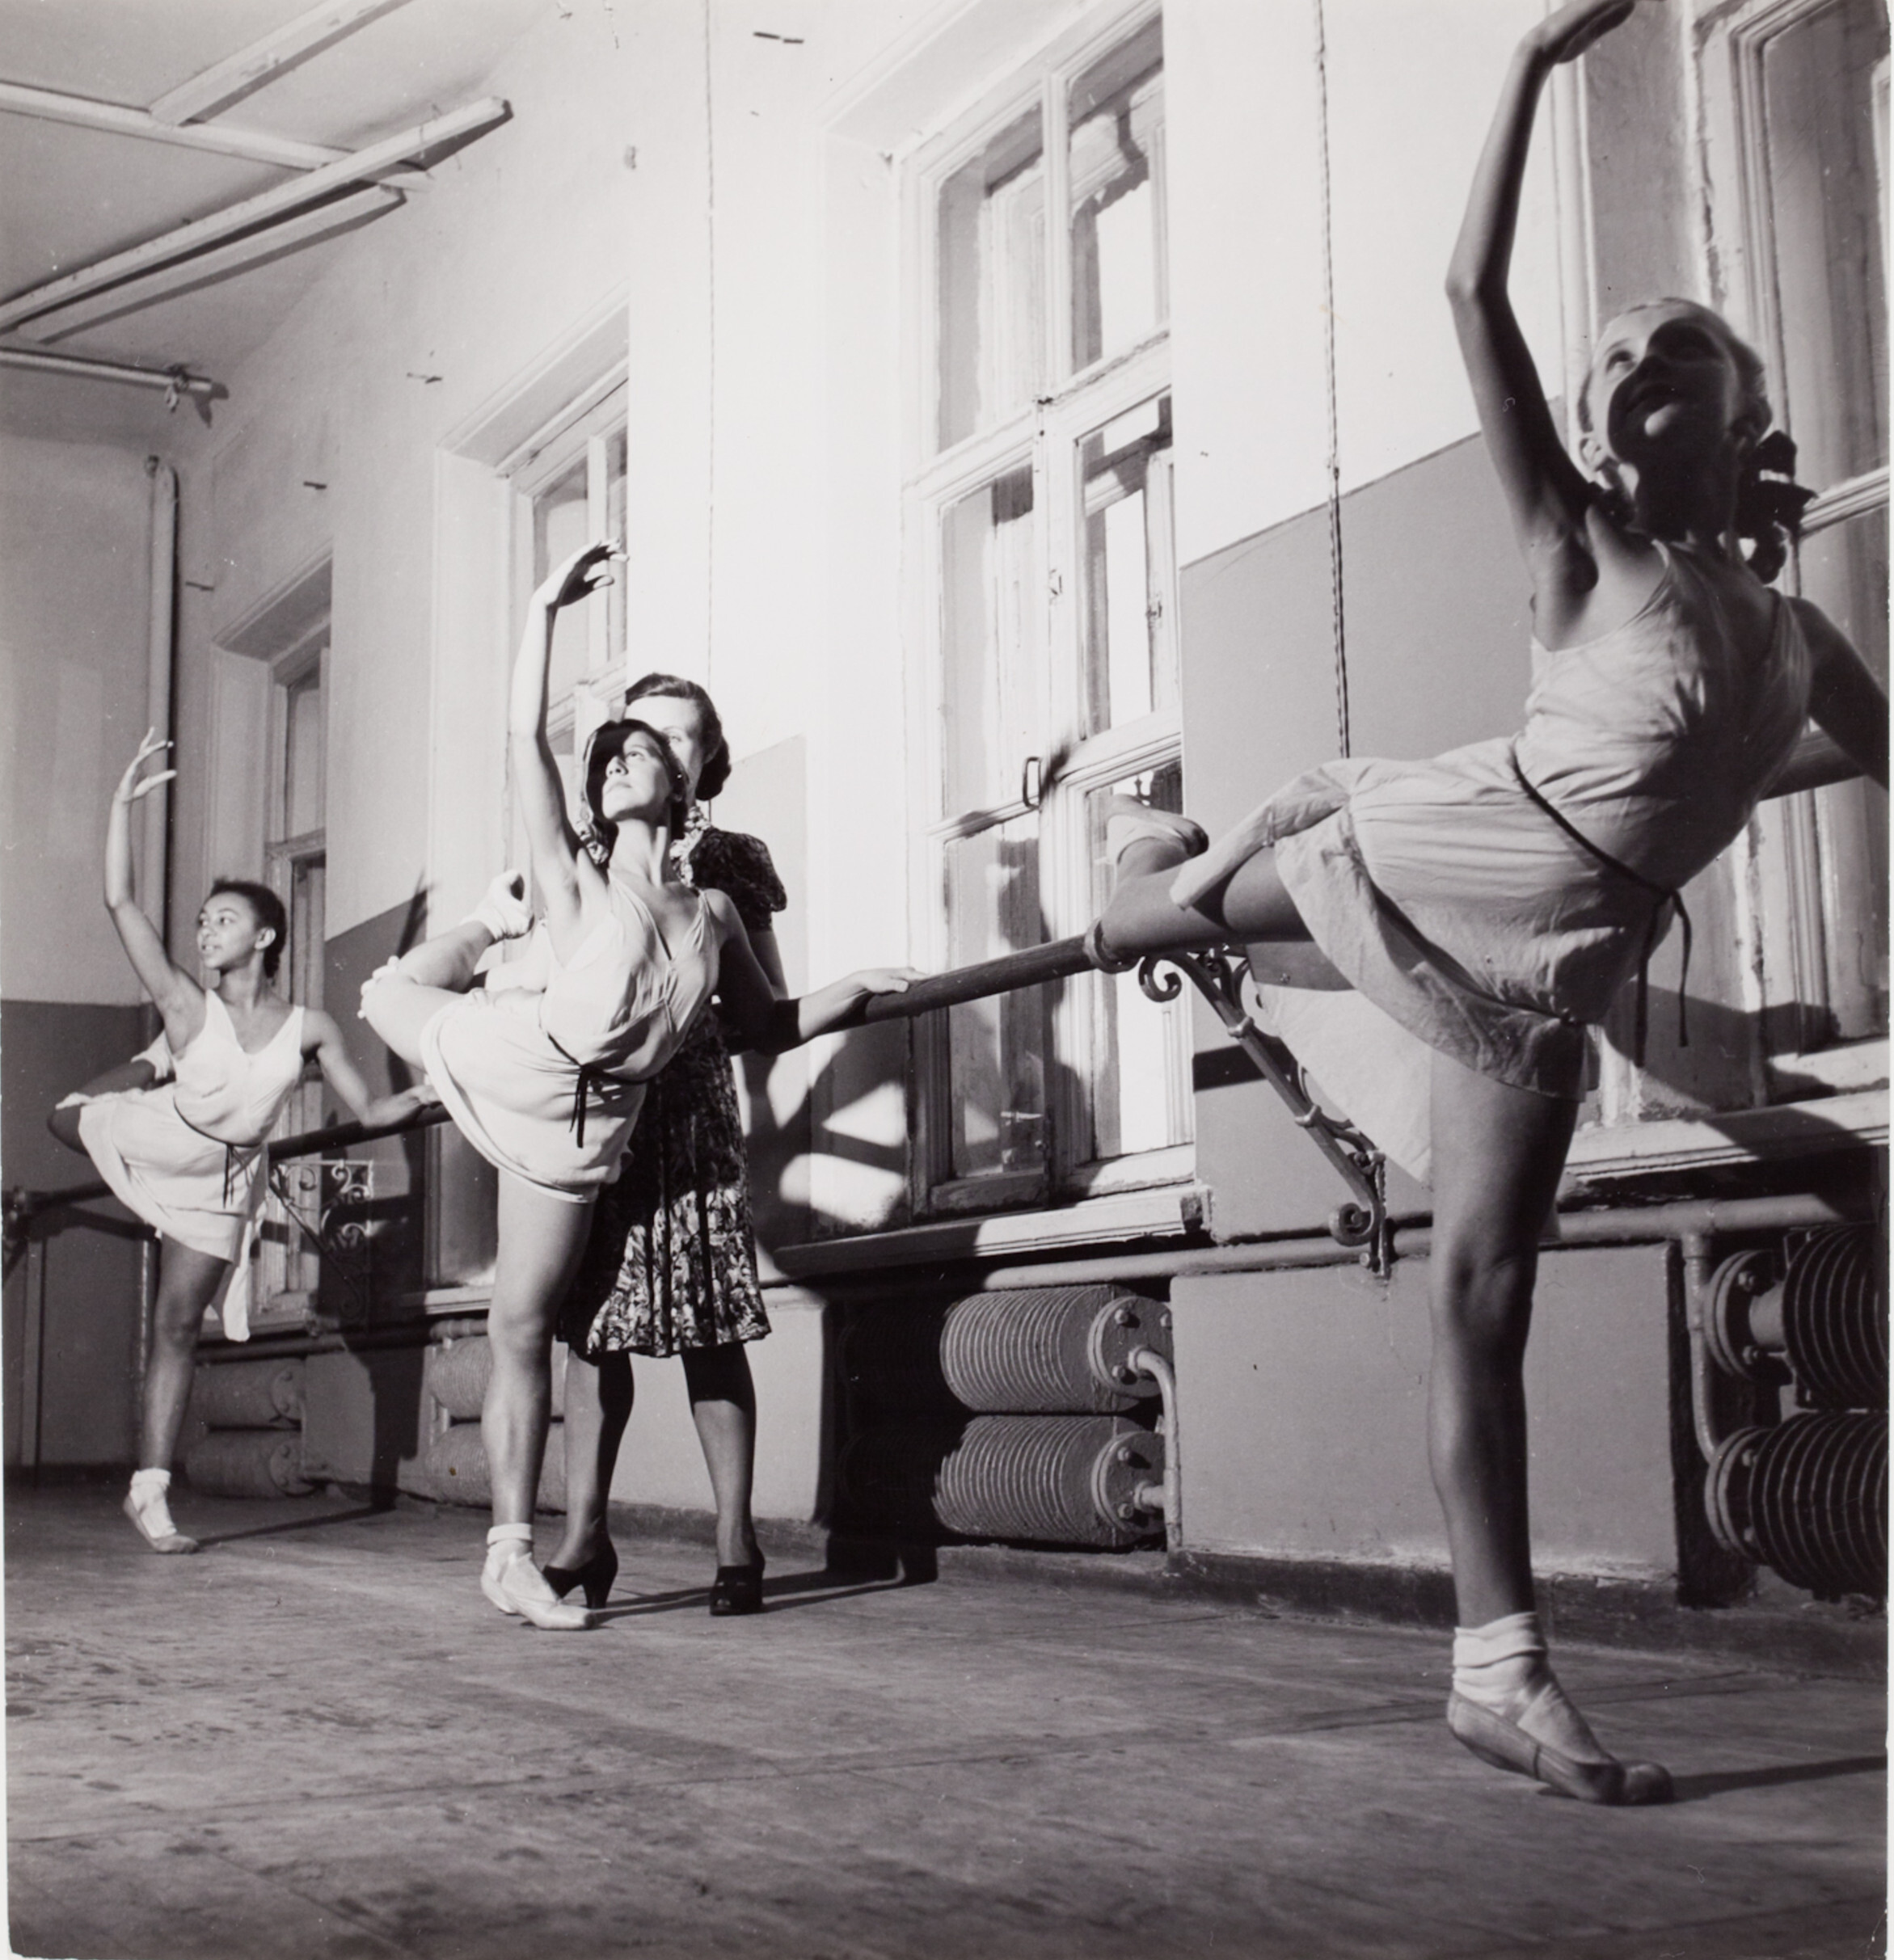 Урок балета у станка, Москва, 1947 год. Фотограф Роберт Капа